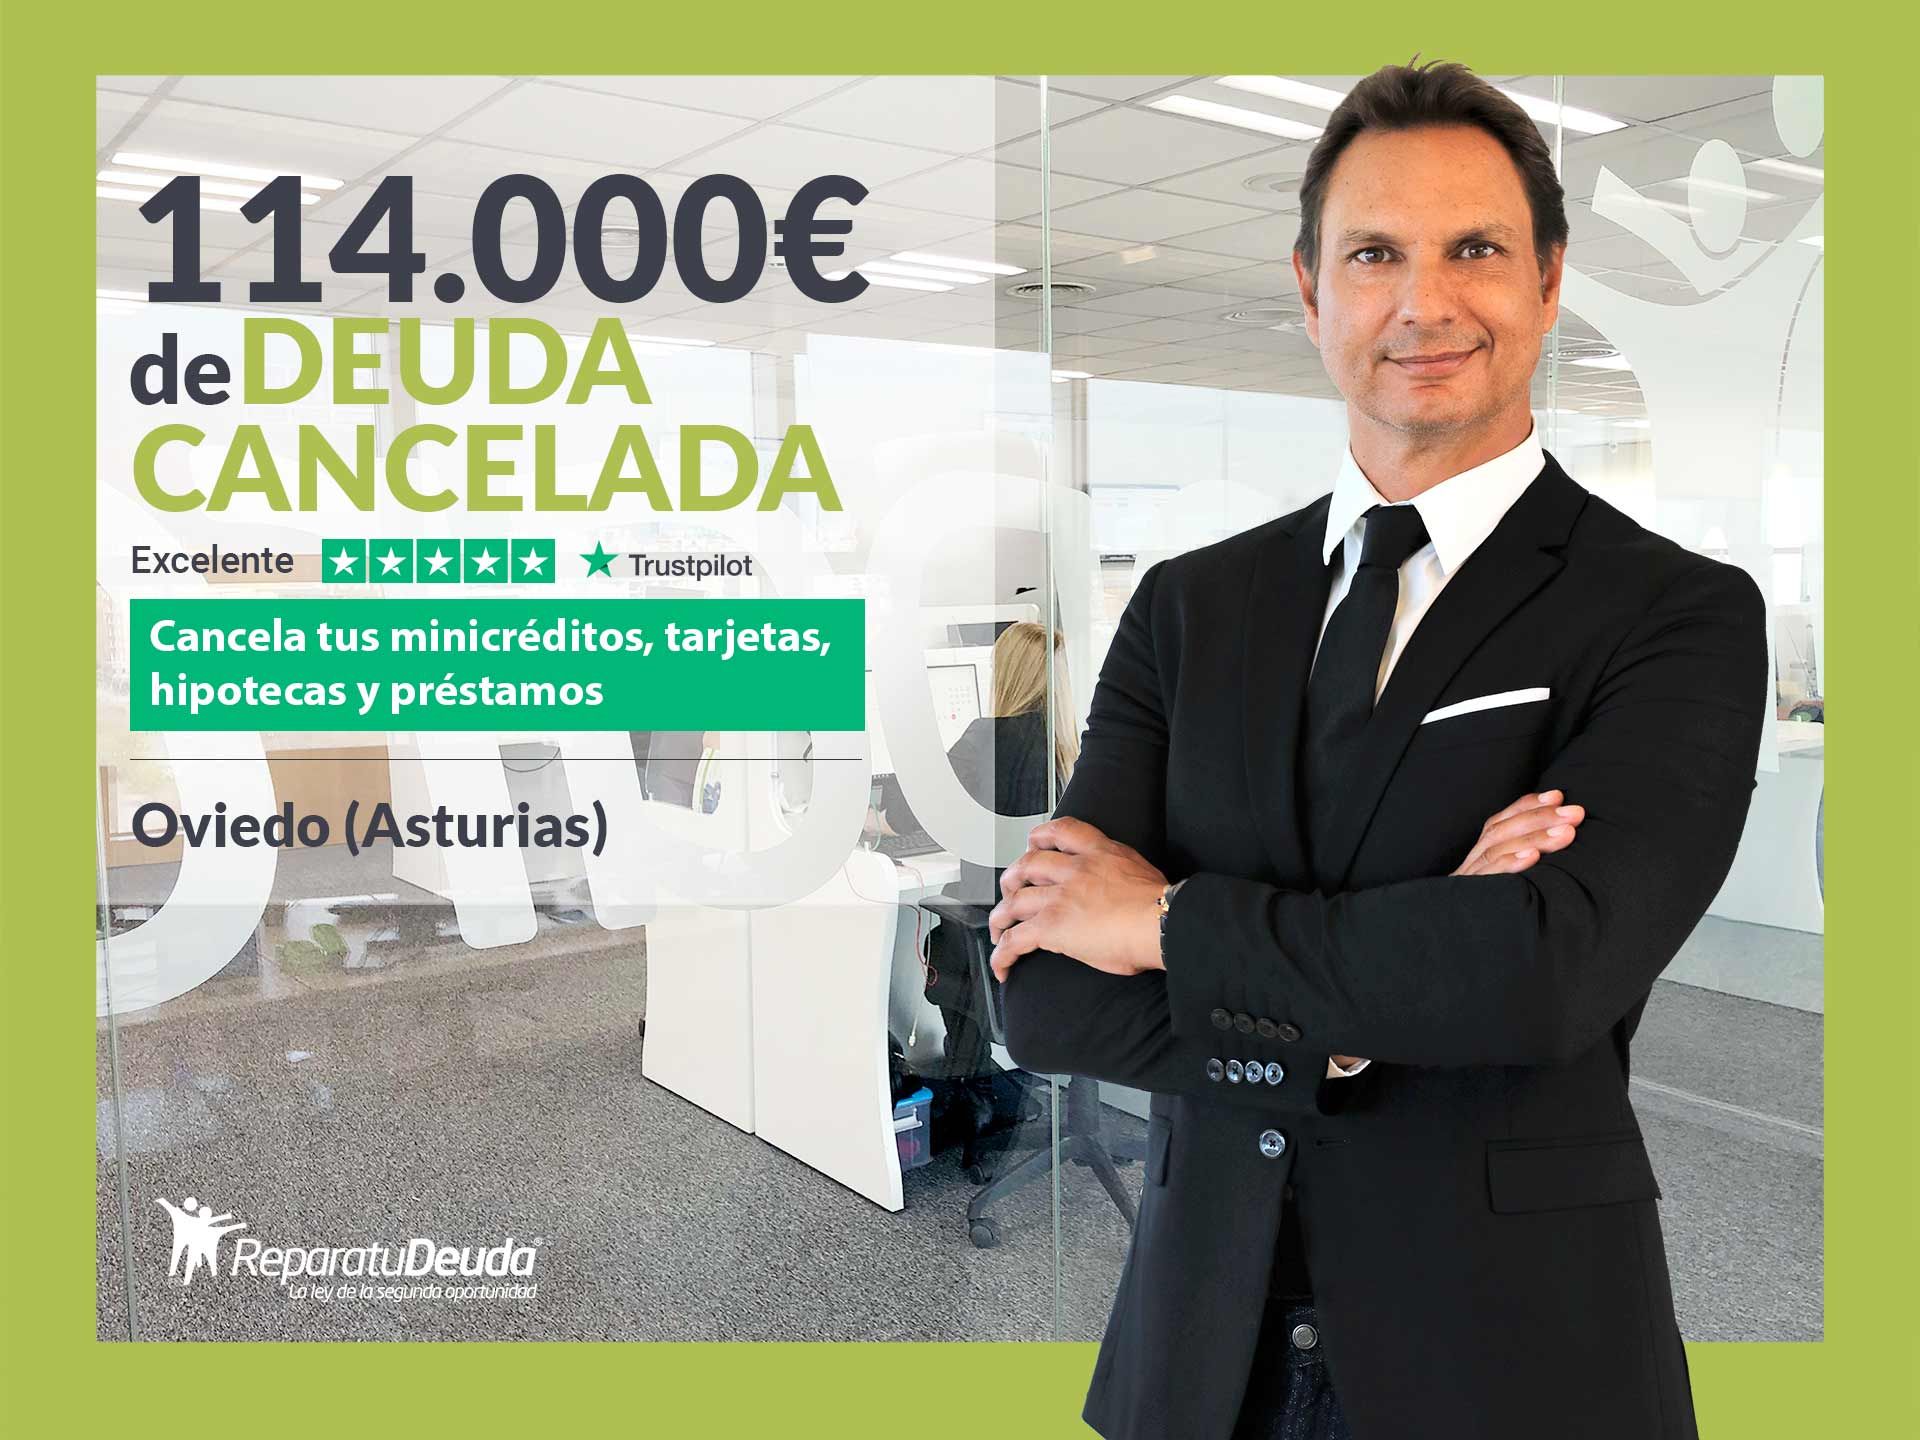 Repara tu Deuda Abogados cancela 114.000? en Oviedo (Asturias) con la Ley de Segunda Oportunidad